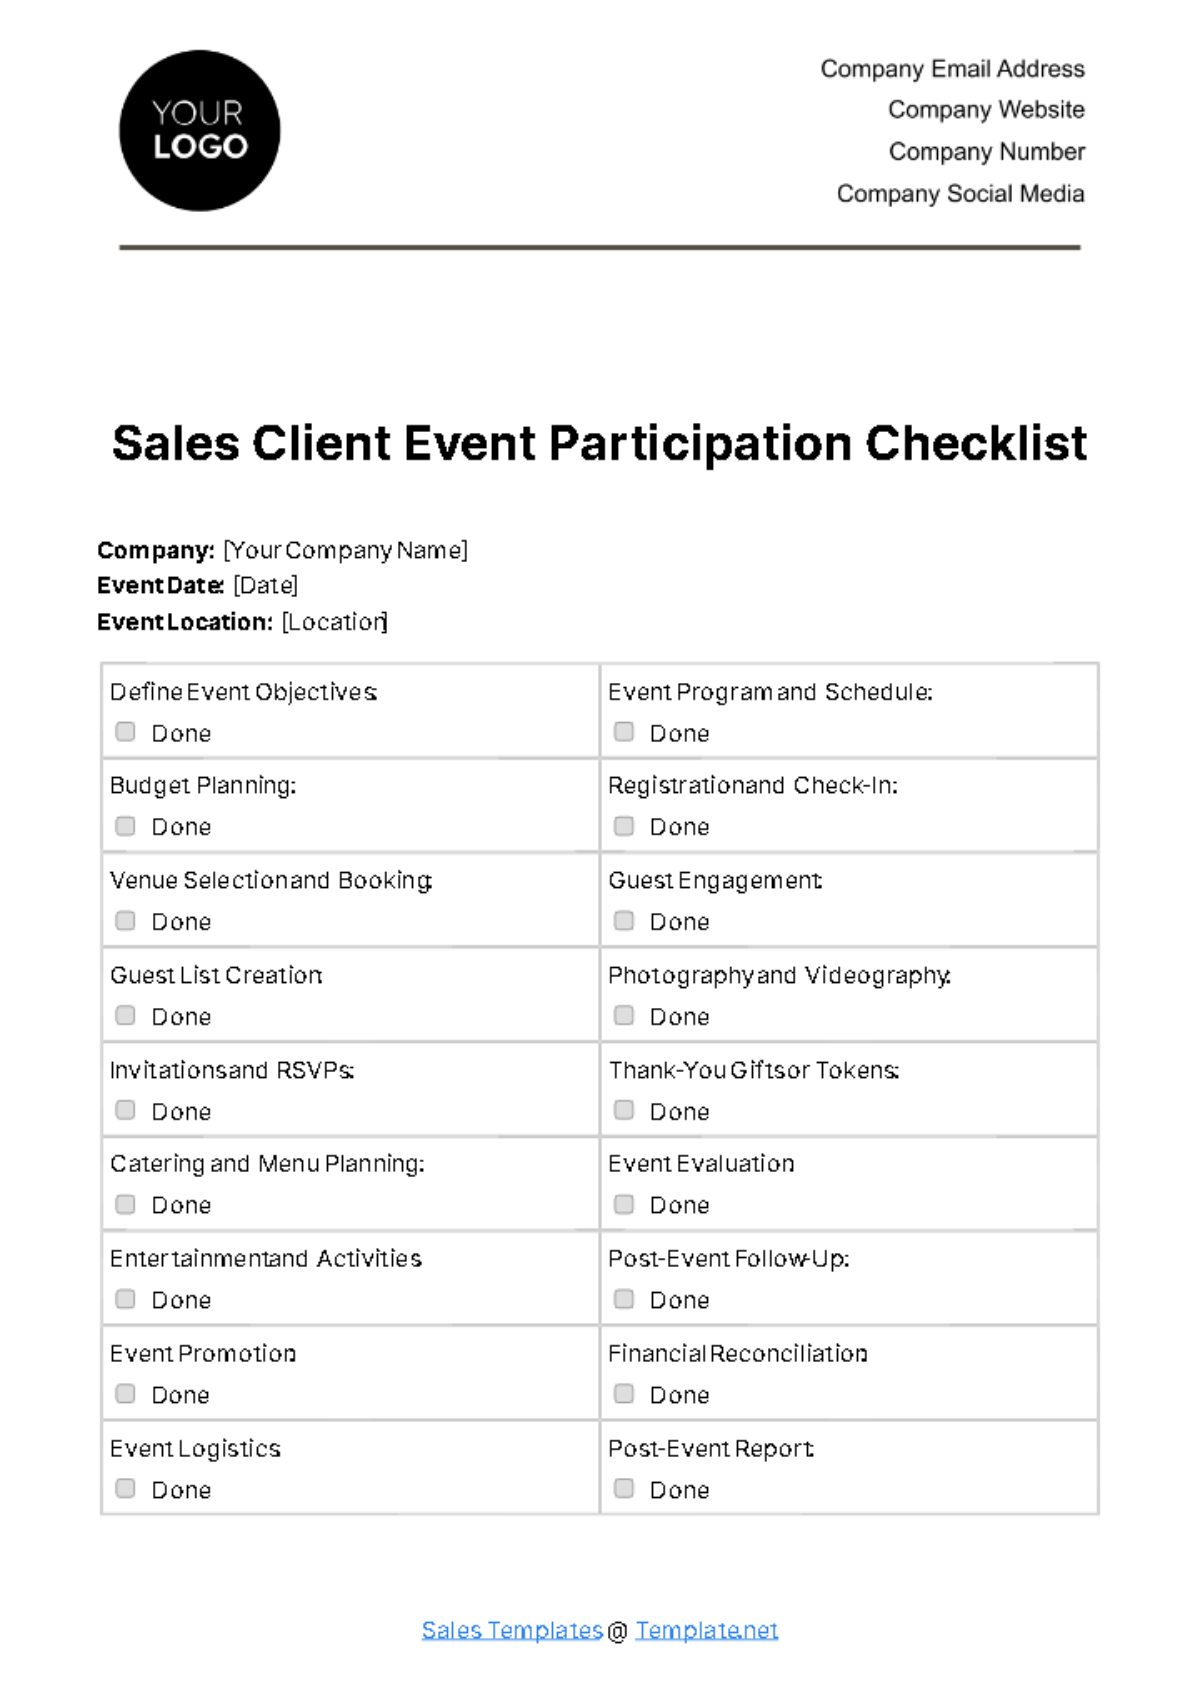 Free Sales Client Event Participation Checklist Template